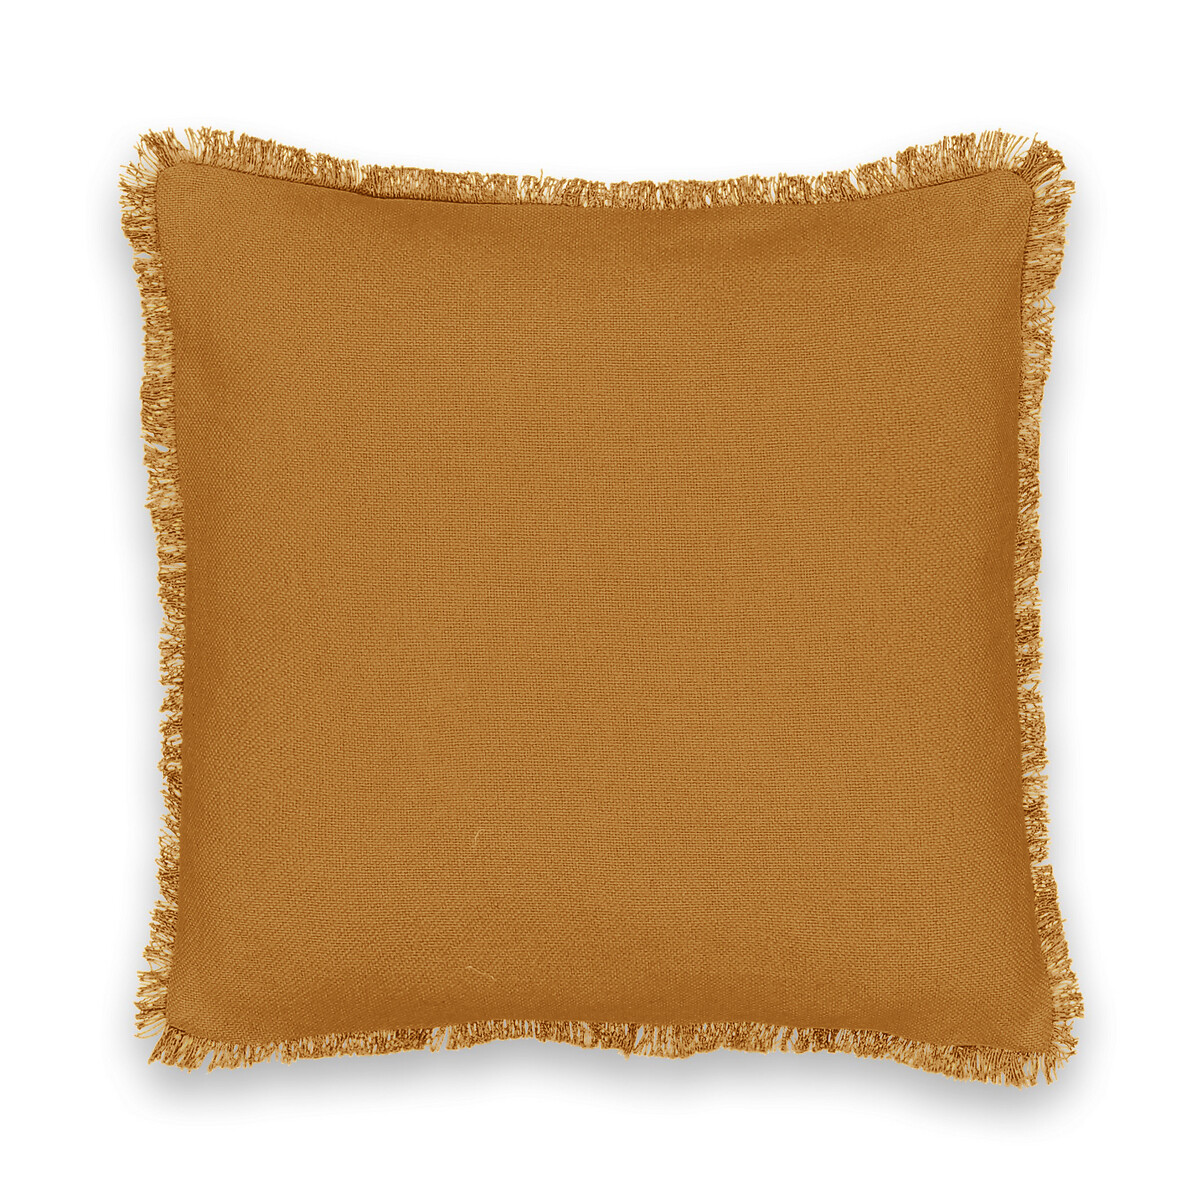 Чехол LaRedoute На подушку из плетеного хлопка Panama 40 x 40 см каштановый, размер 40 x 40 см - фото 1